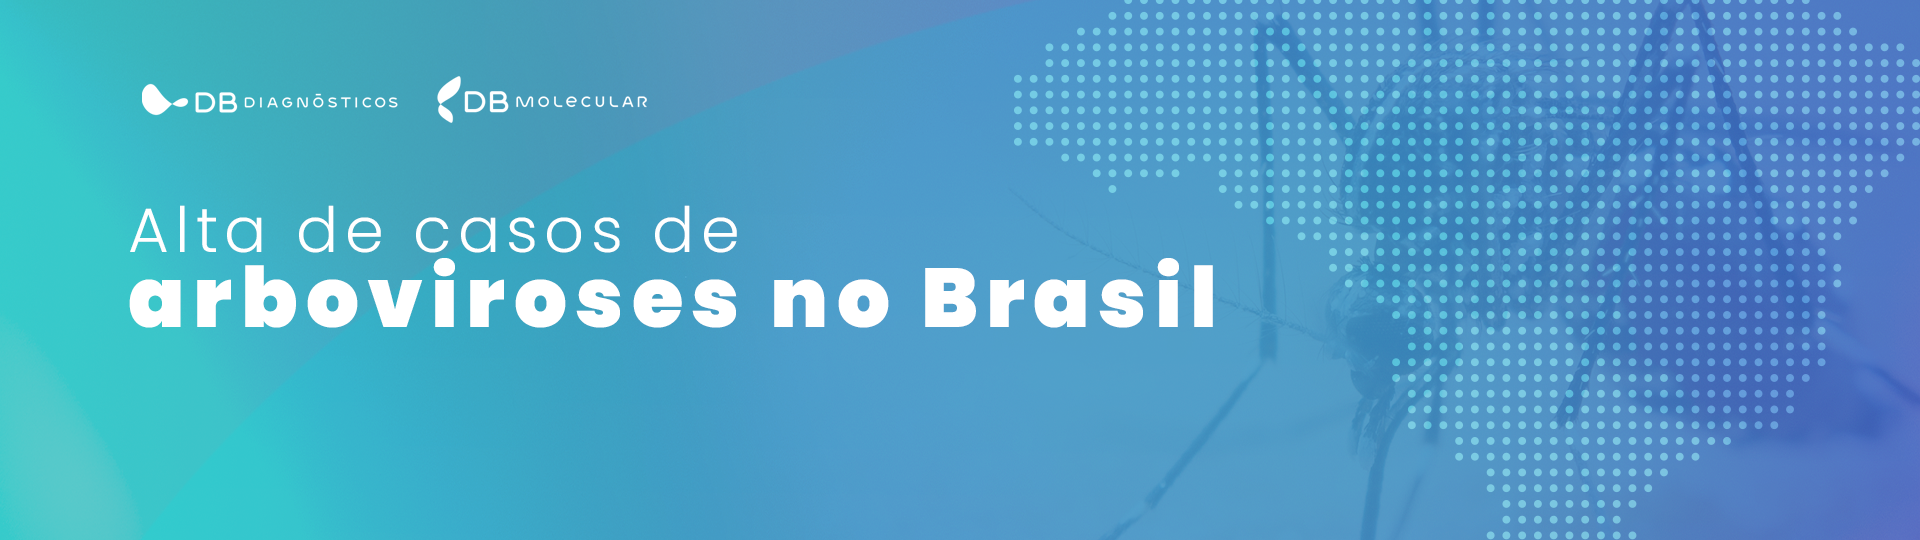 Alta de casos de arboviroses no Brasil alerta para a importância de um diagnóstico preciso  | Diagnósticos do Brasil